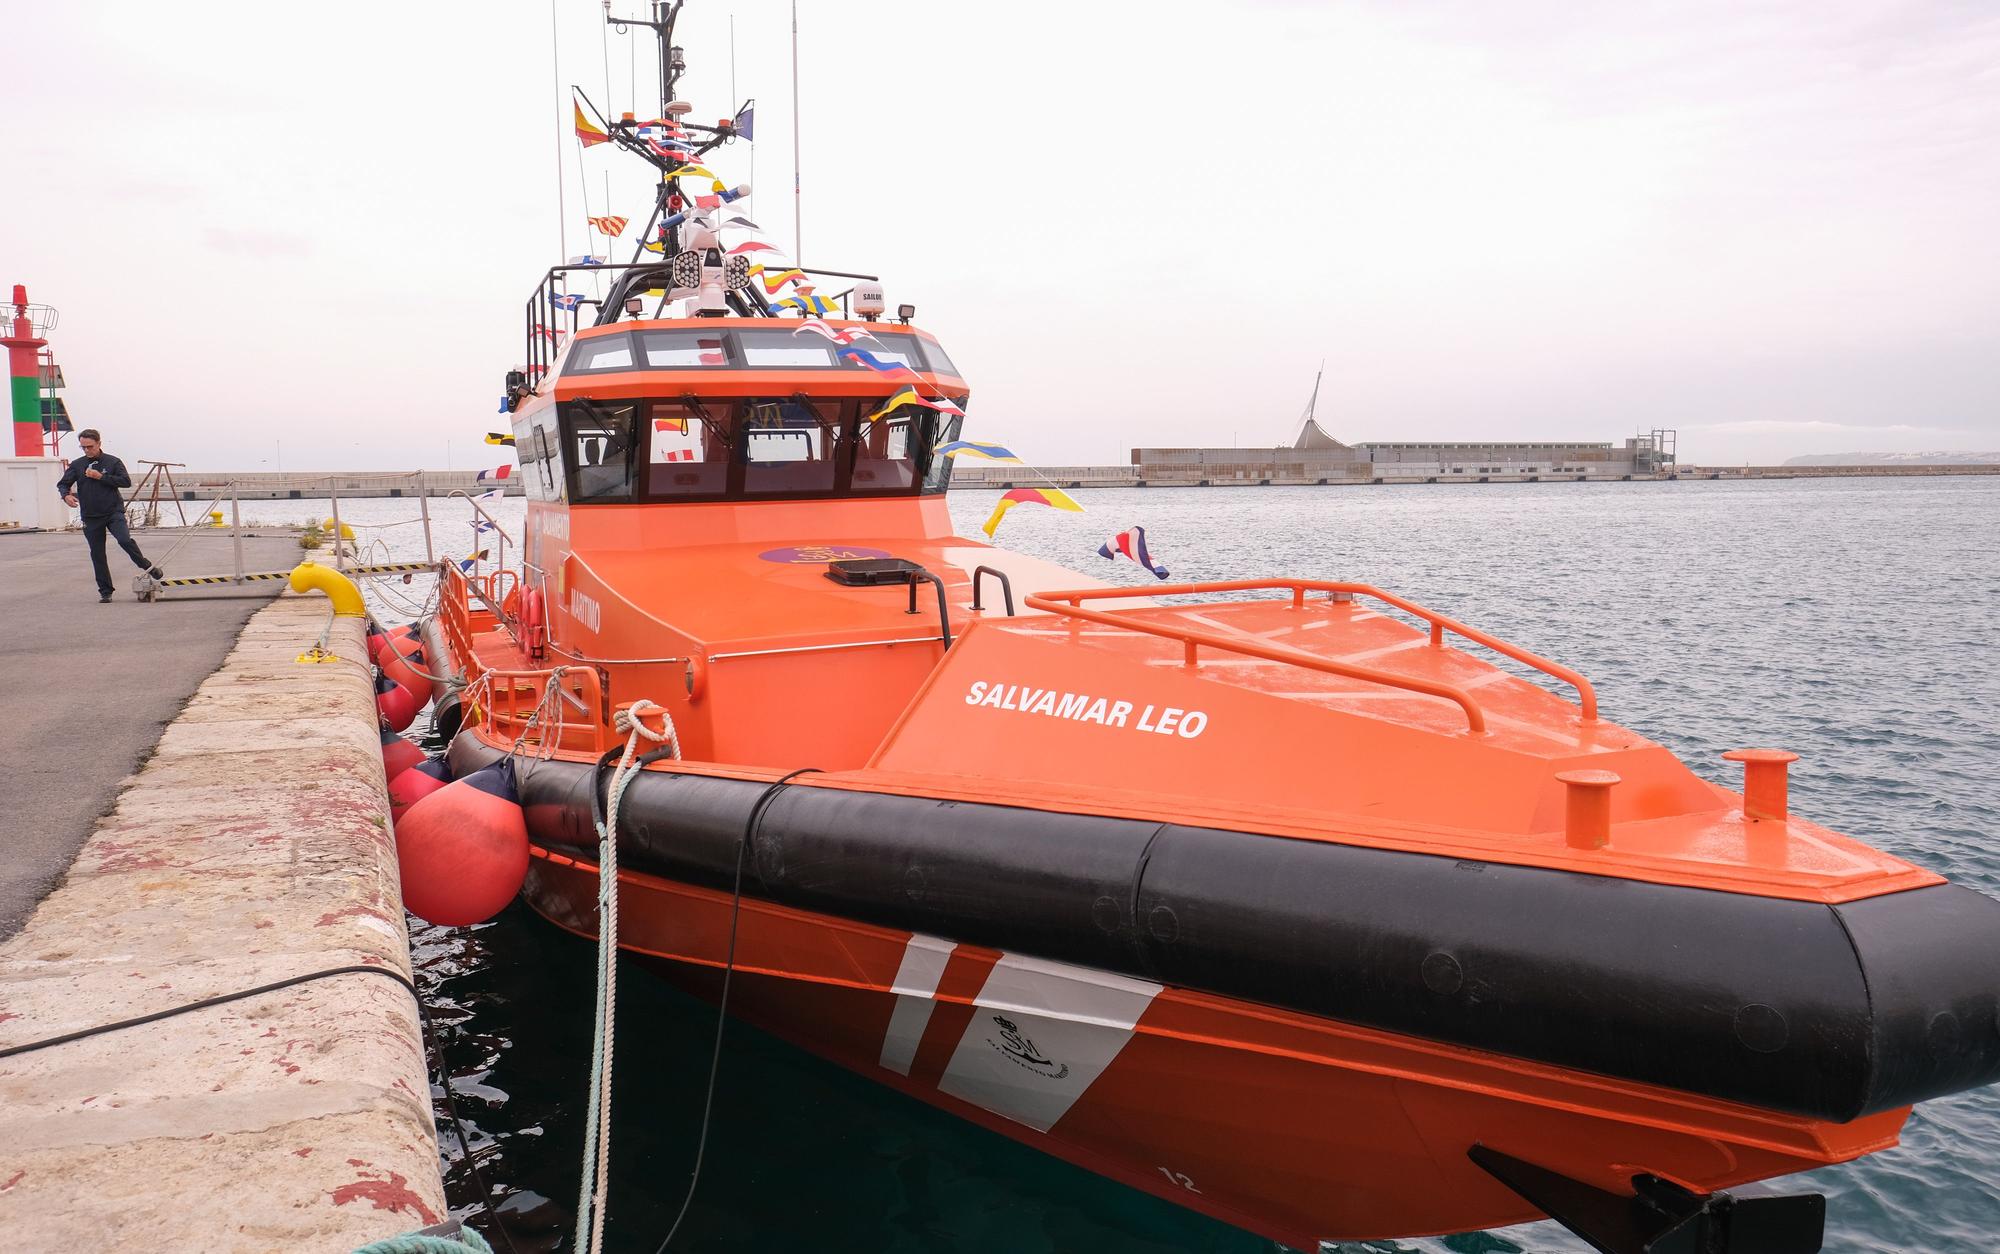 Salvamento Marítimo estrena nuevo barco en su base de Alicante